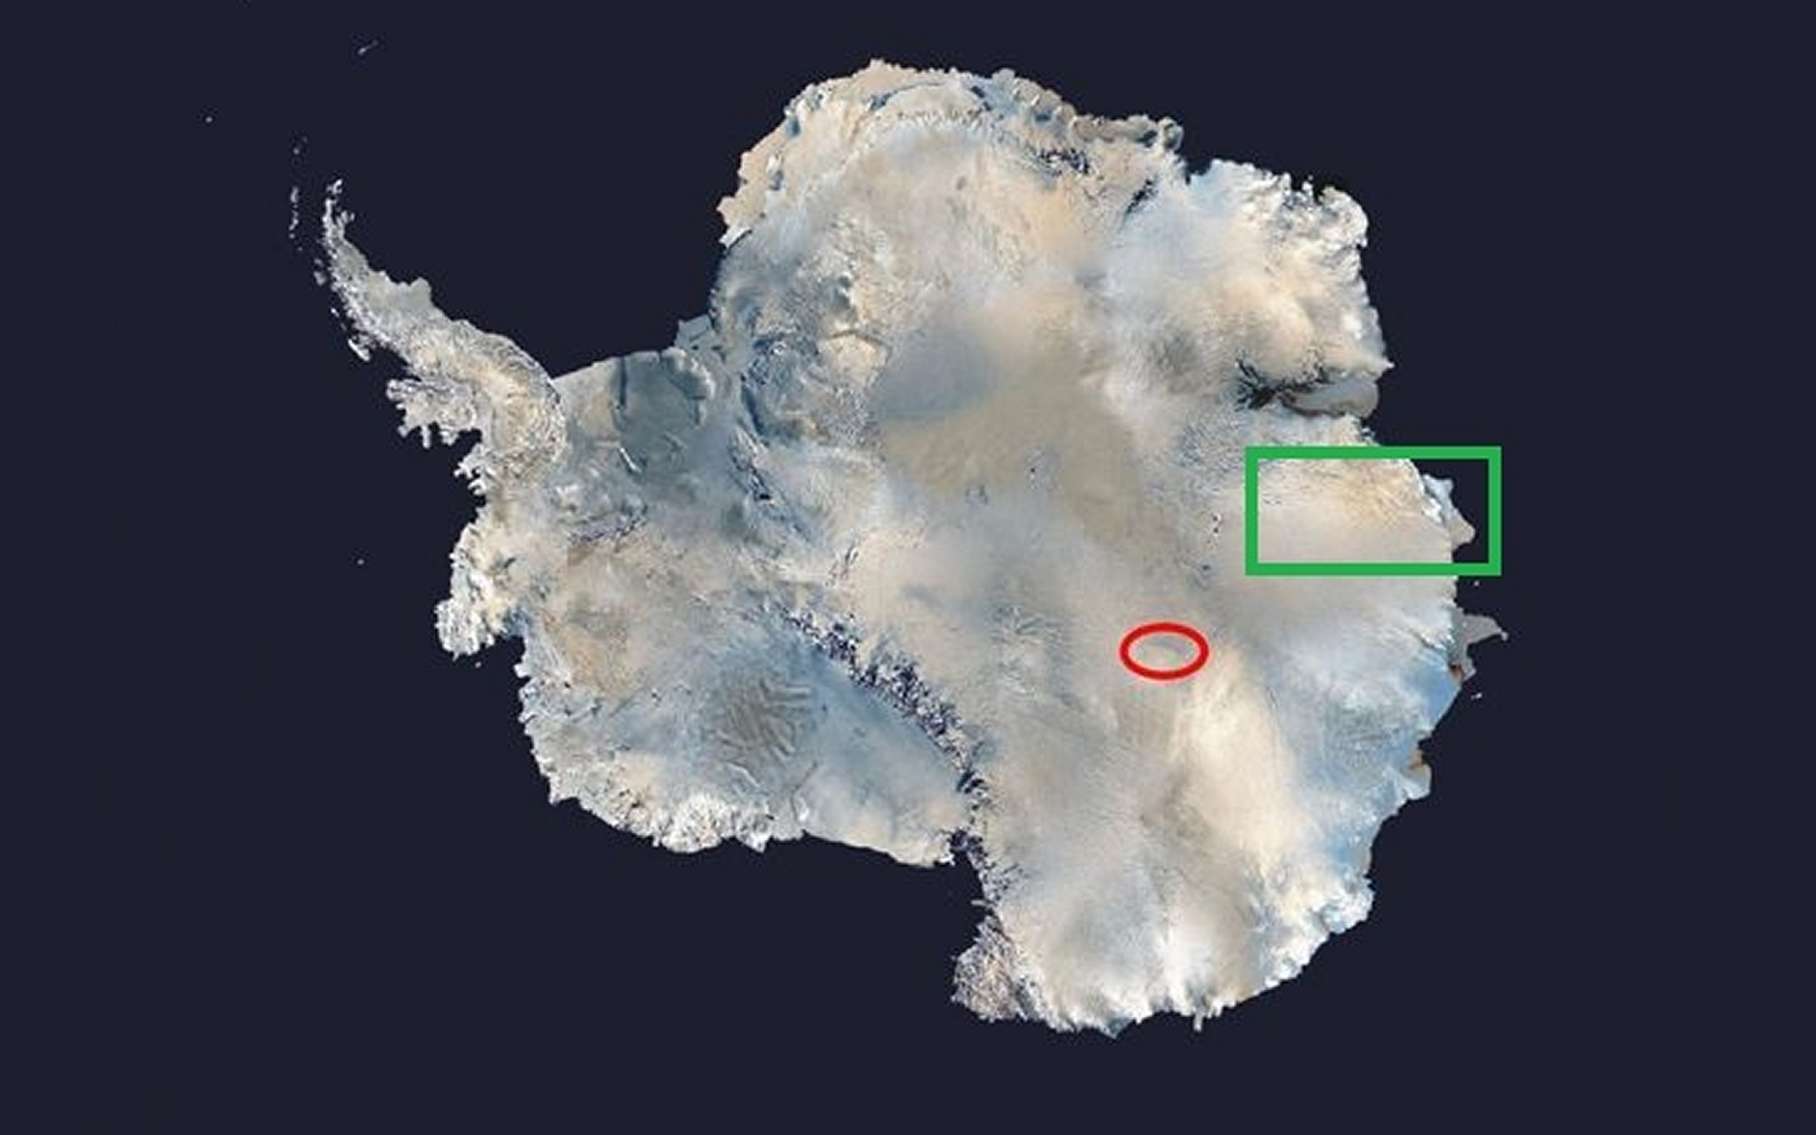 Un mystérieux lac sous-glaciaire caché en Antarctique